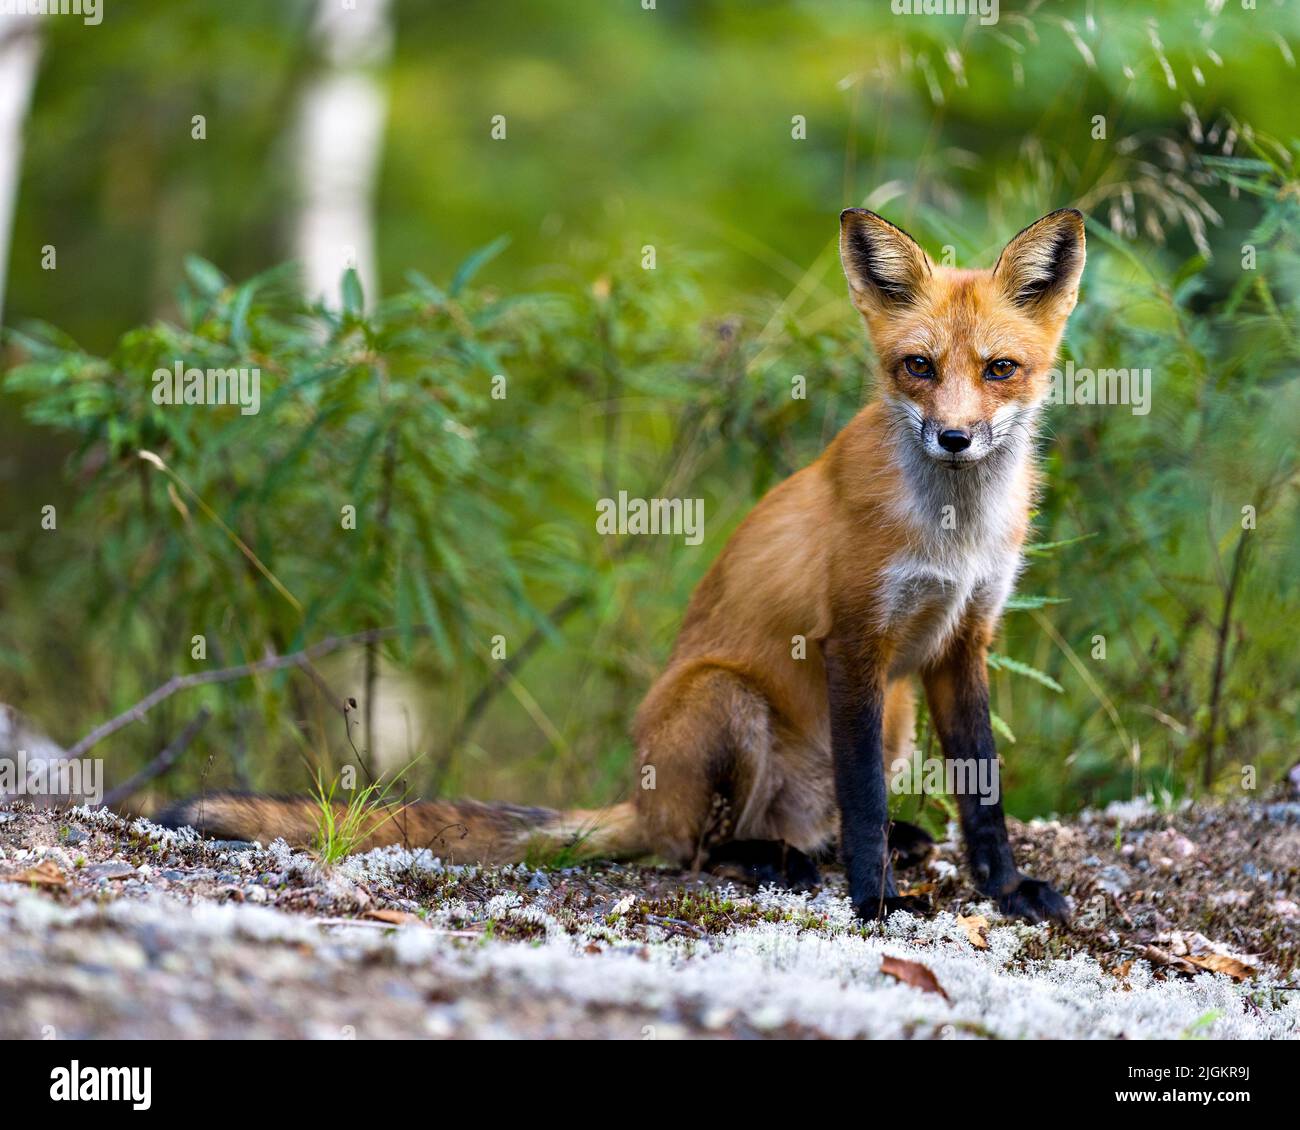 Vista ravvicinata del profilo Red Fox seduto e guardando la fotocamera con la foresta sfocata e il fogliame sfondo nel suo ambiente e habitat. Immagine Fox. Foto Stock